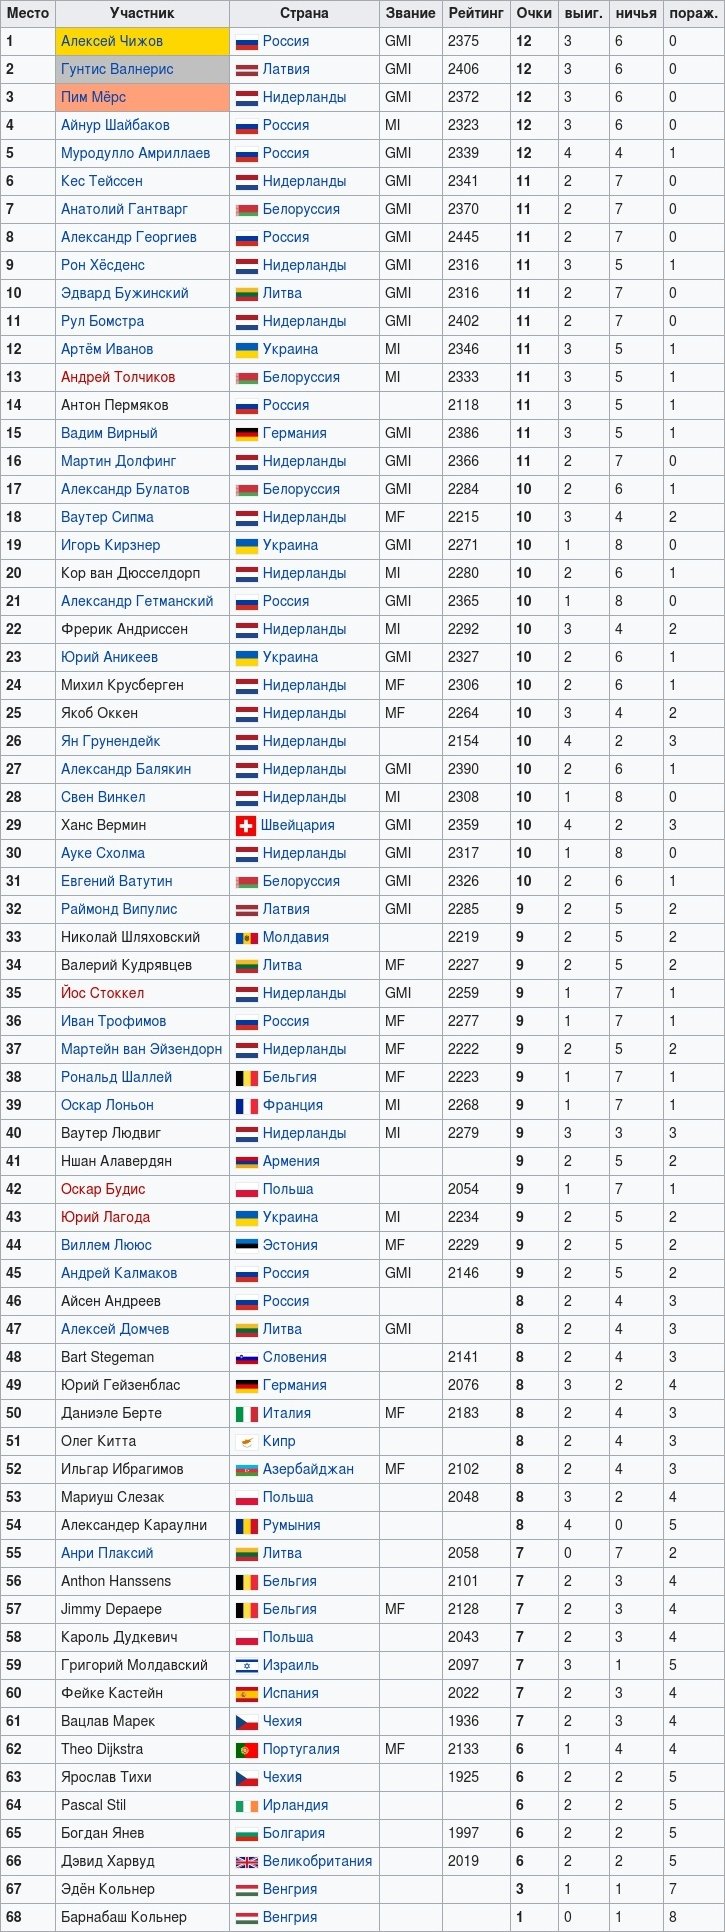 Чемпионат Европы по международным шашкам среди мужчин 2012